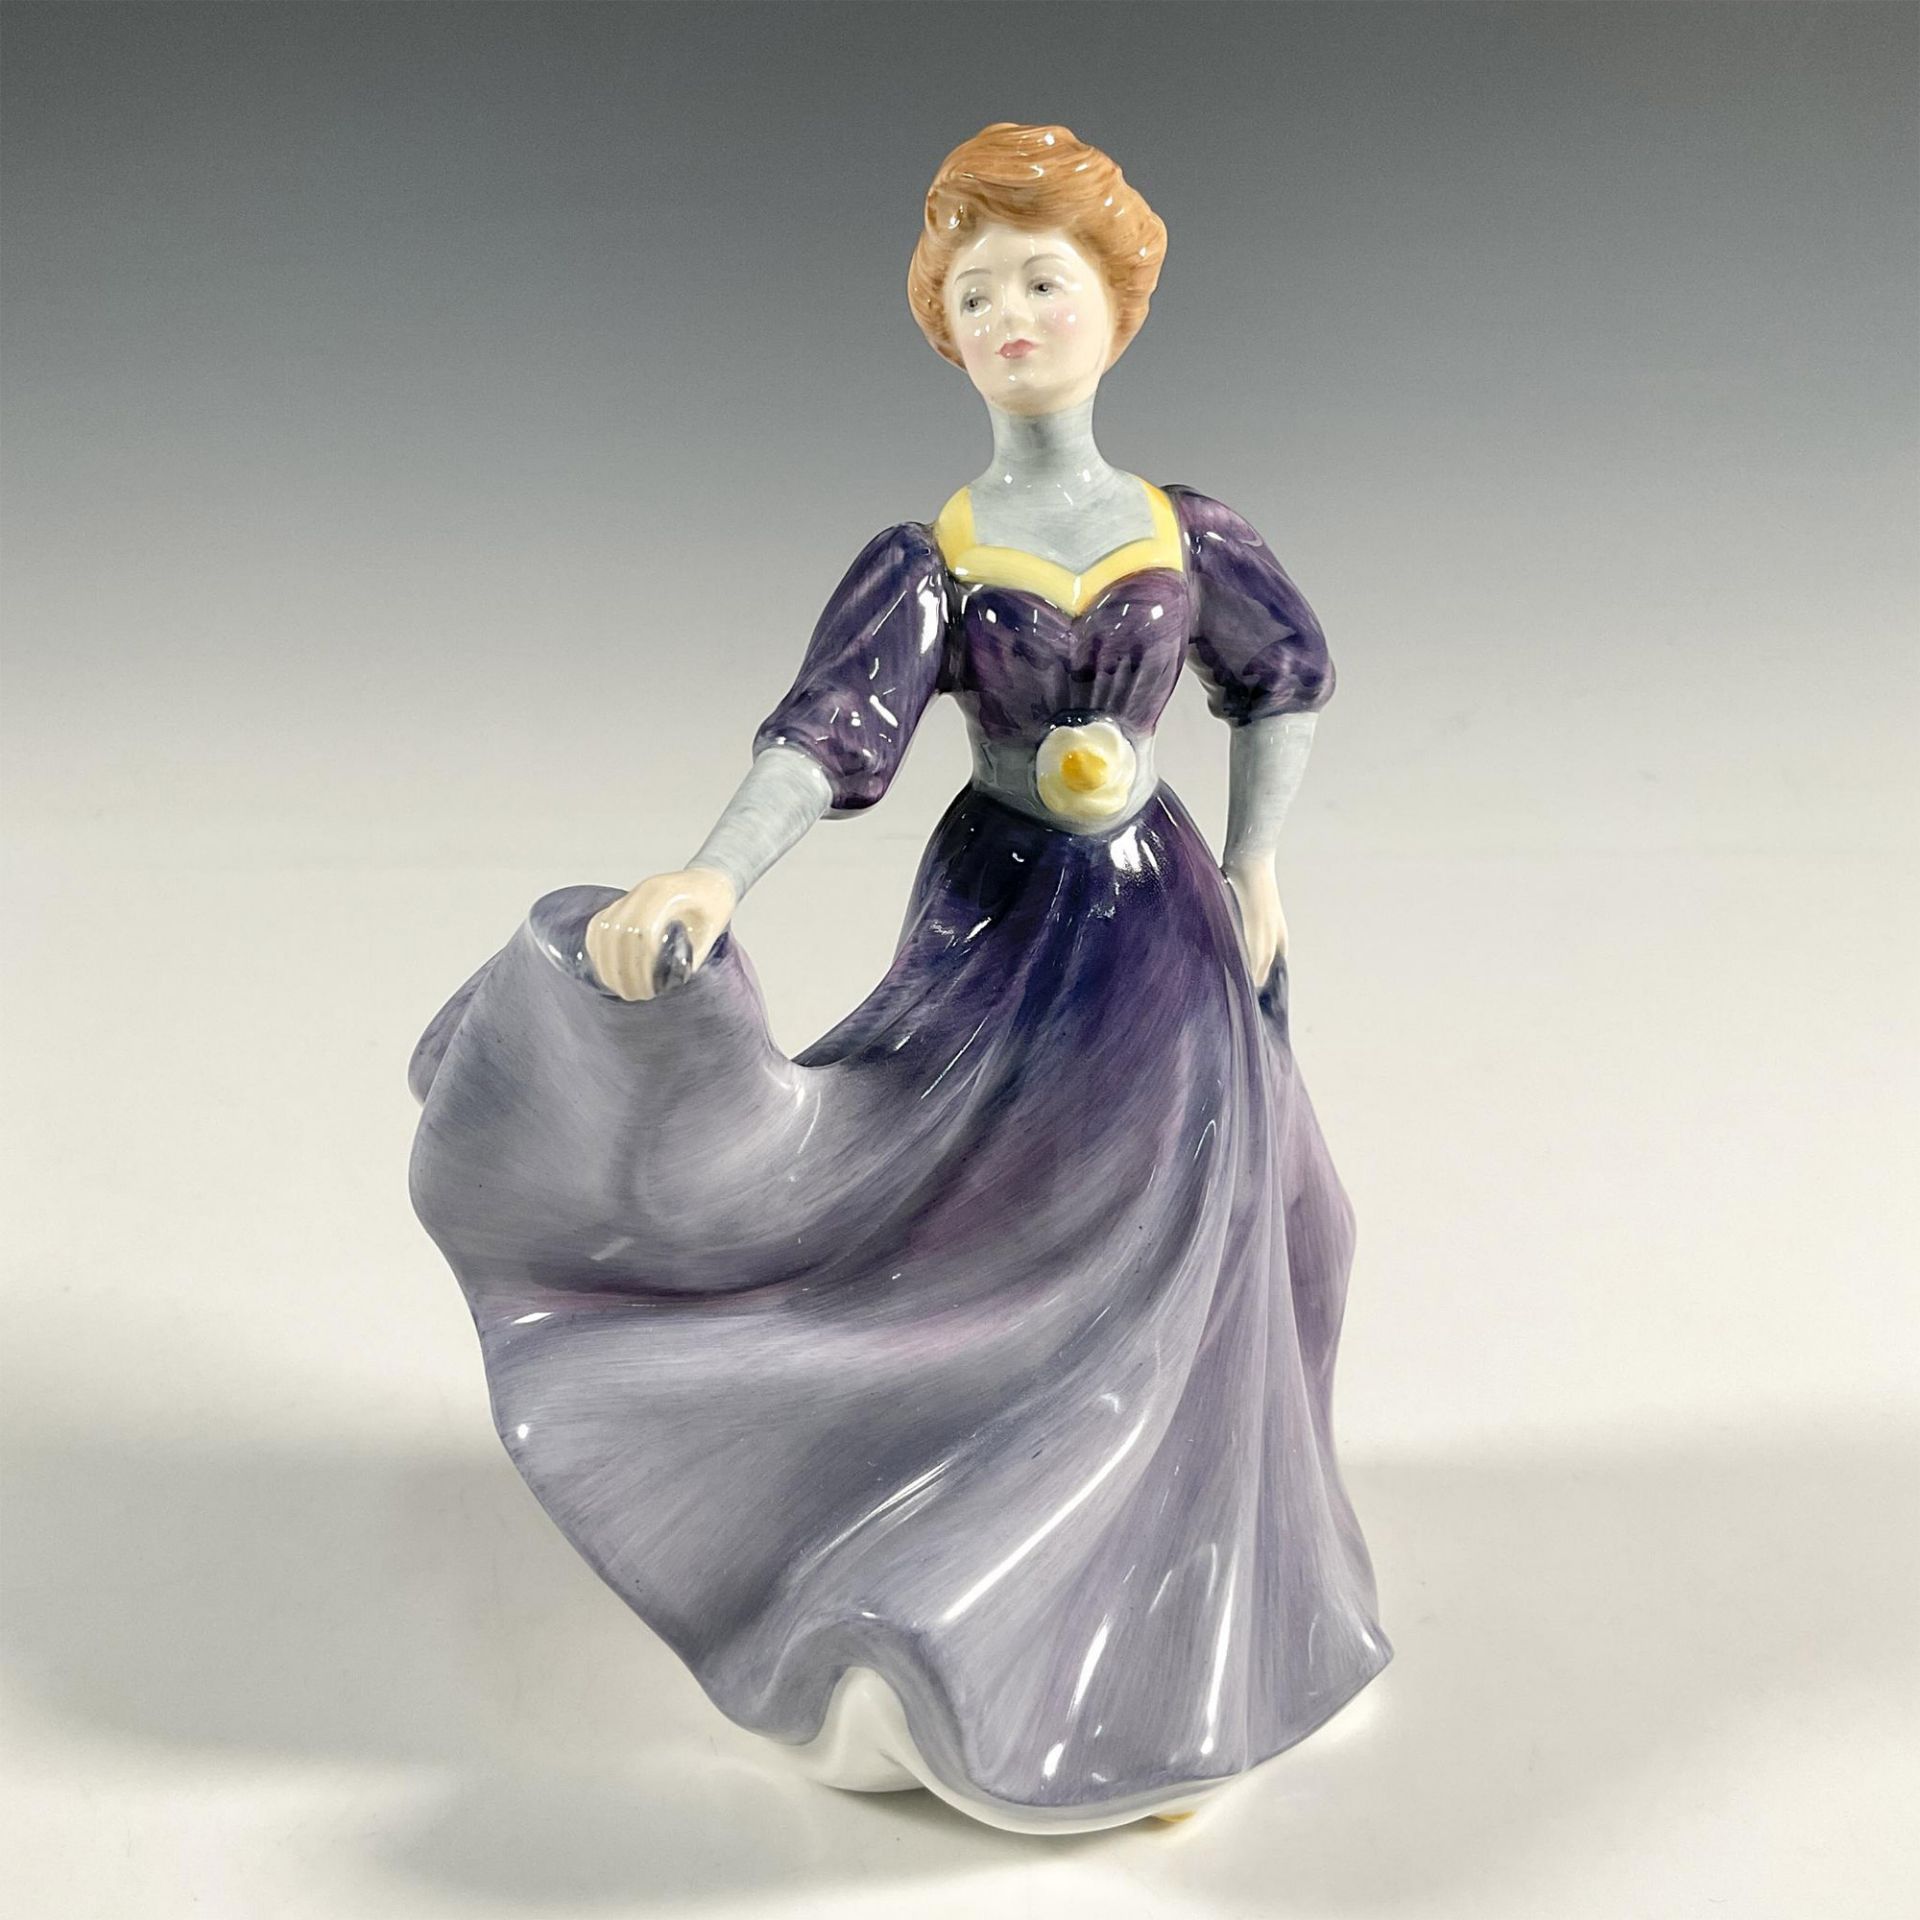 Jacqueline HN2333 - Royal Doulton Figurine